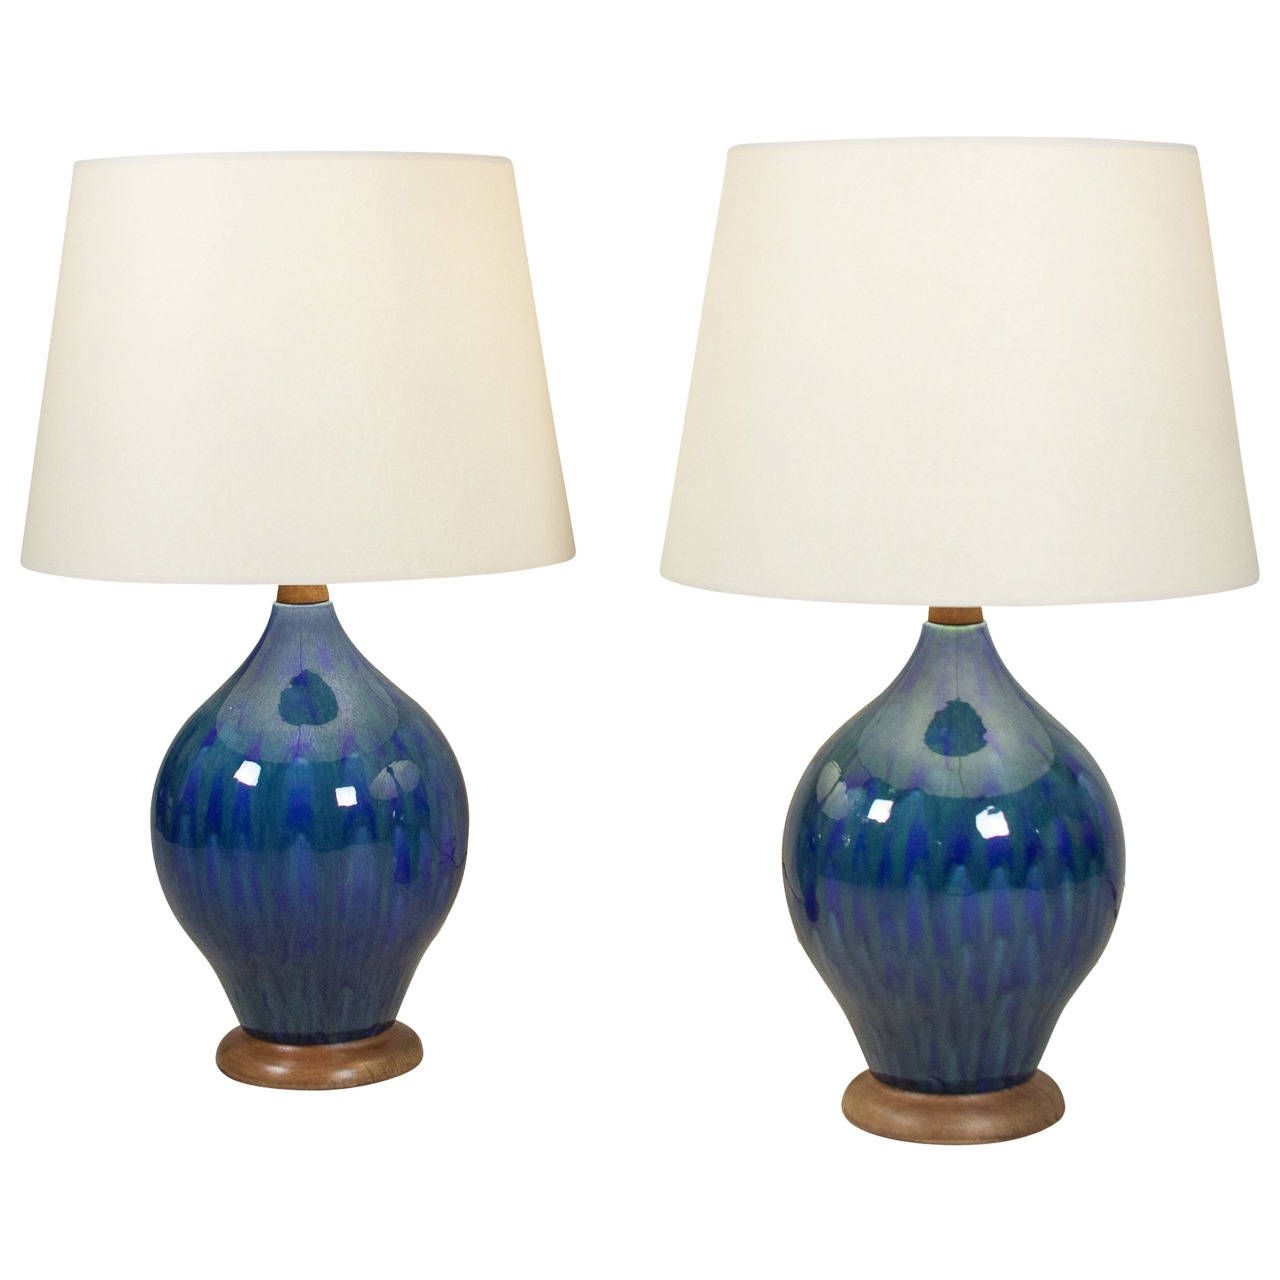 Pair of mottled blue glaze ceramic lamps